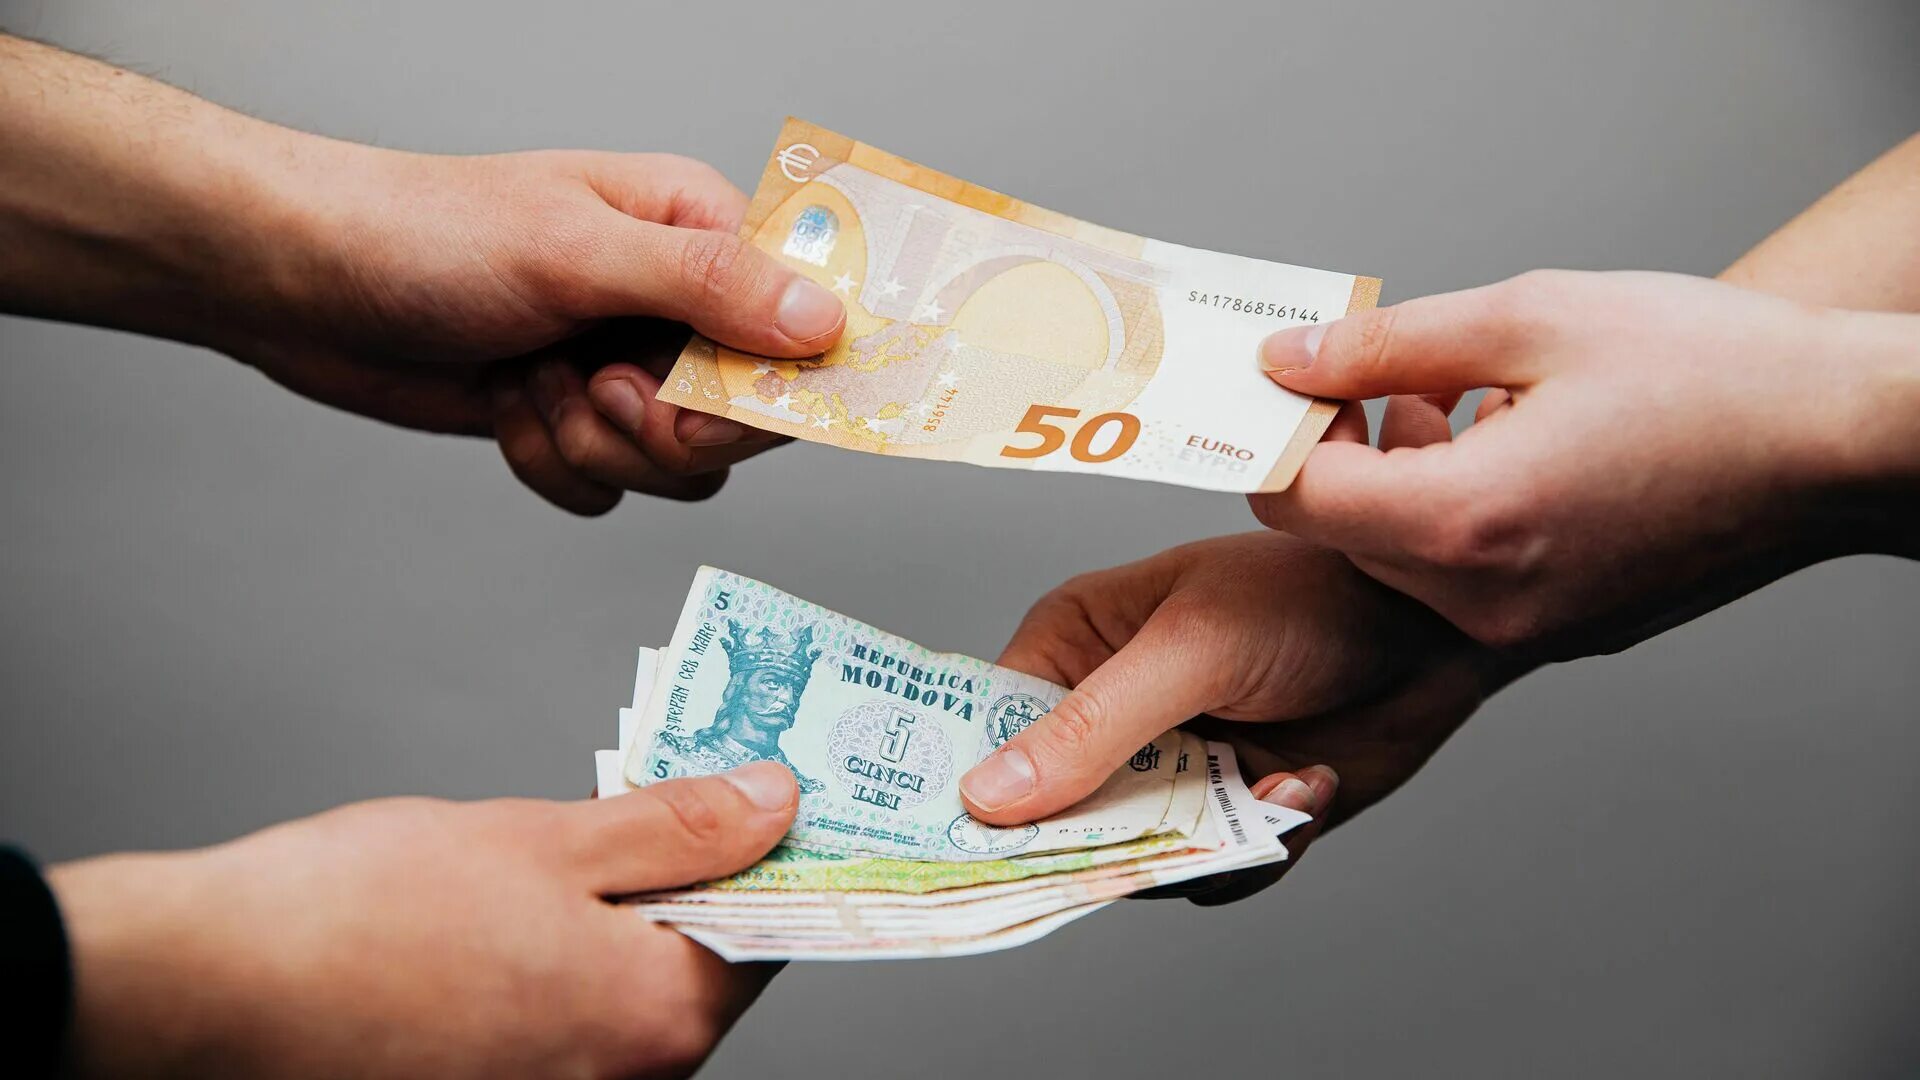 Евро и грн в руках. Доллары в молдавских леях. Национальная валюта Молдавии.